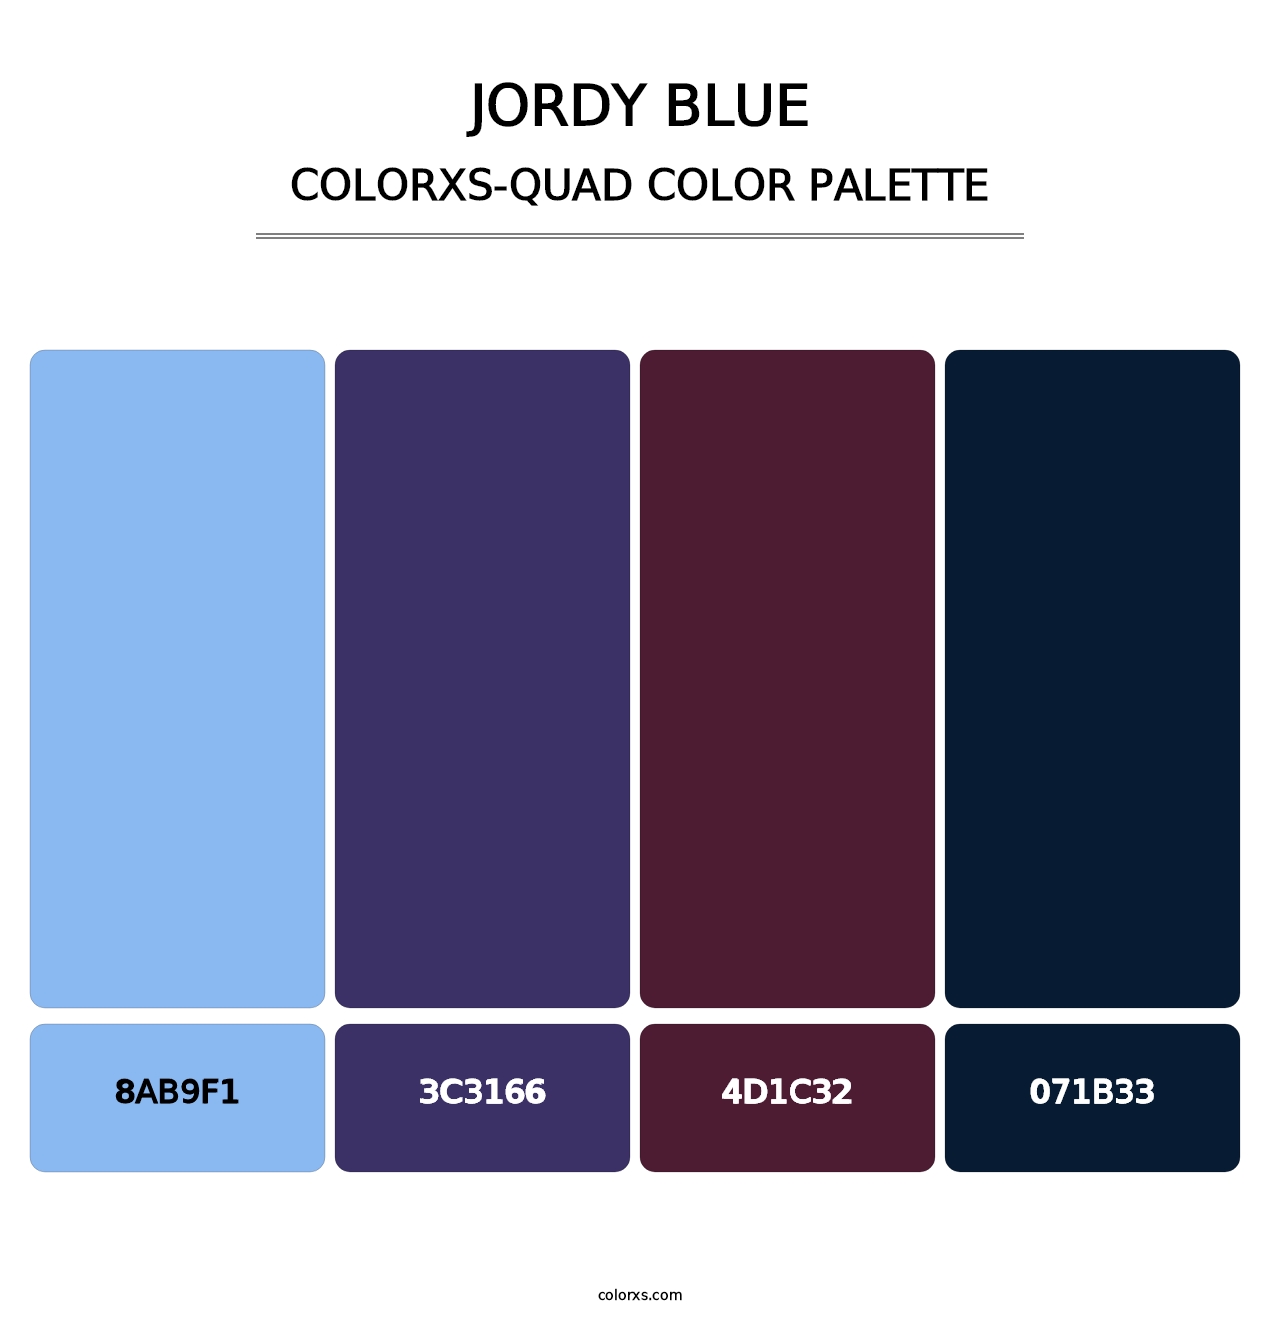 Jordy Blue - Colorxs Quad Palette